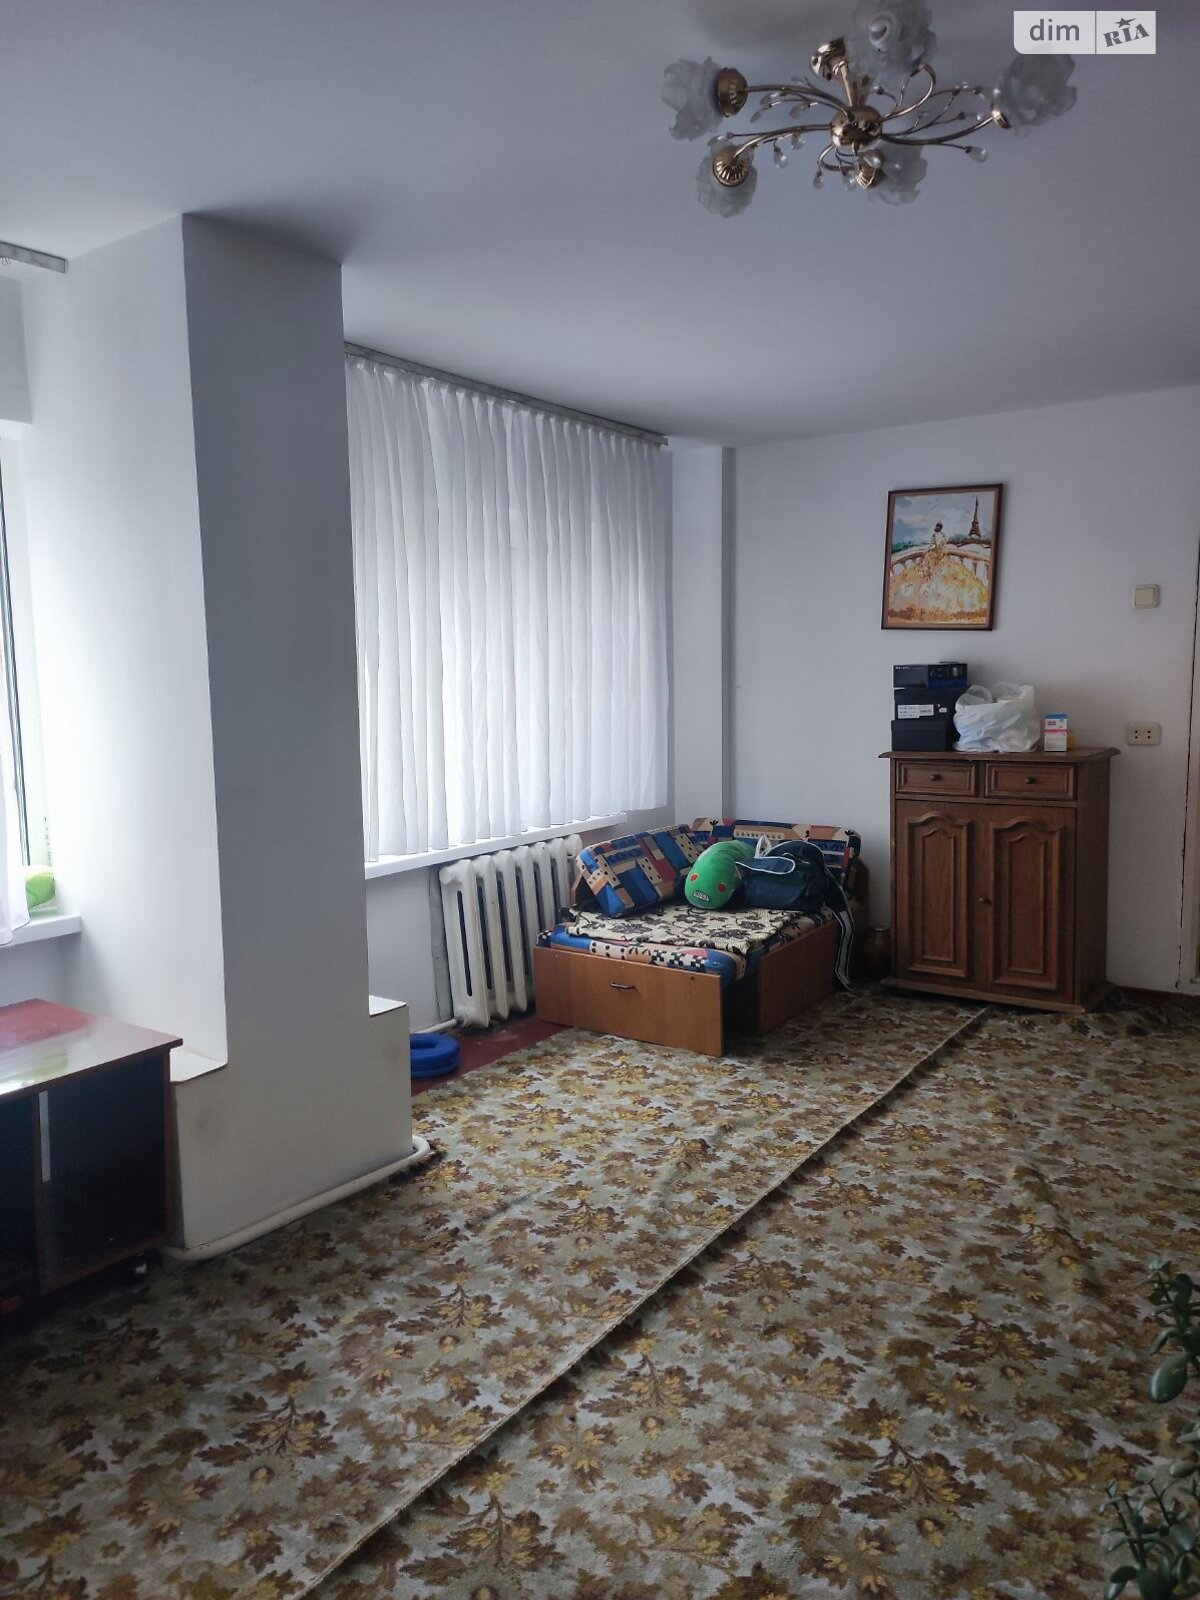 Продажа части дома в Виннице, улица Трамвайная (Революционная), район Славянка, 3 комнаты фото 1